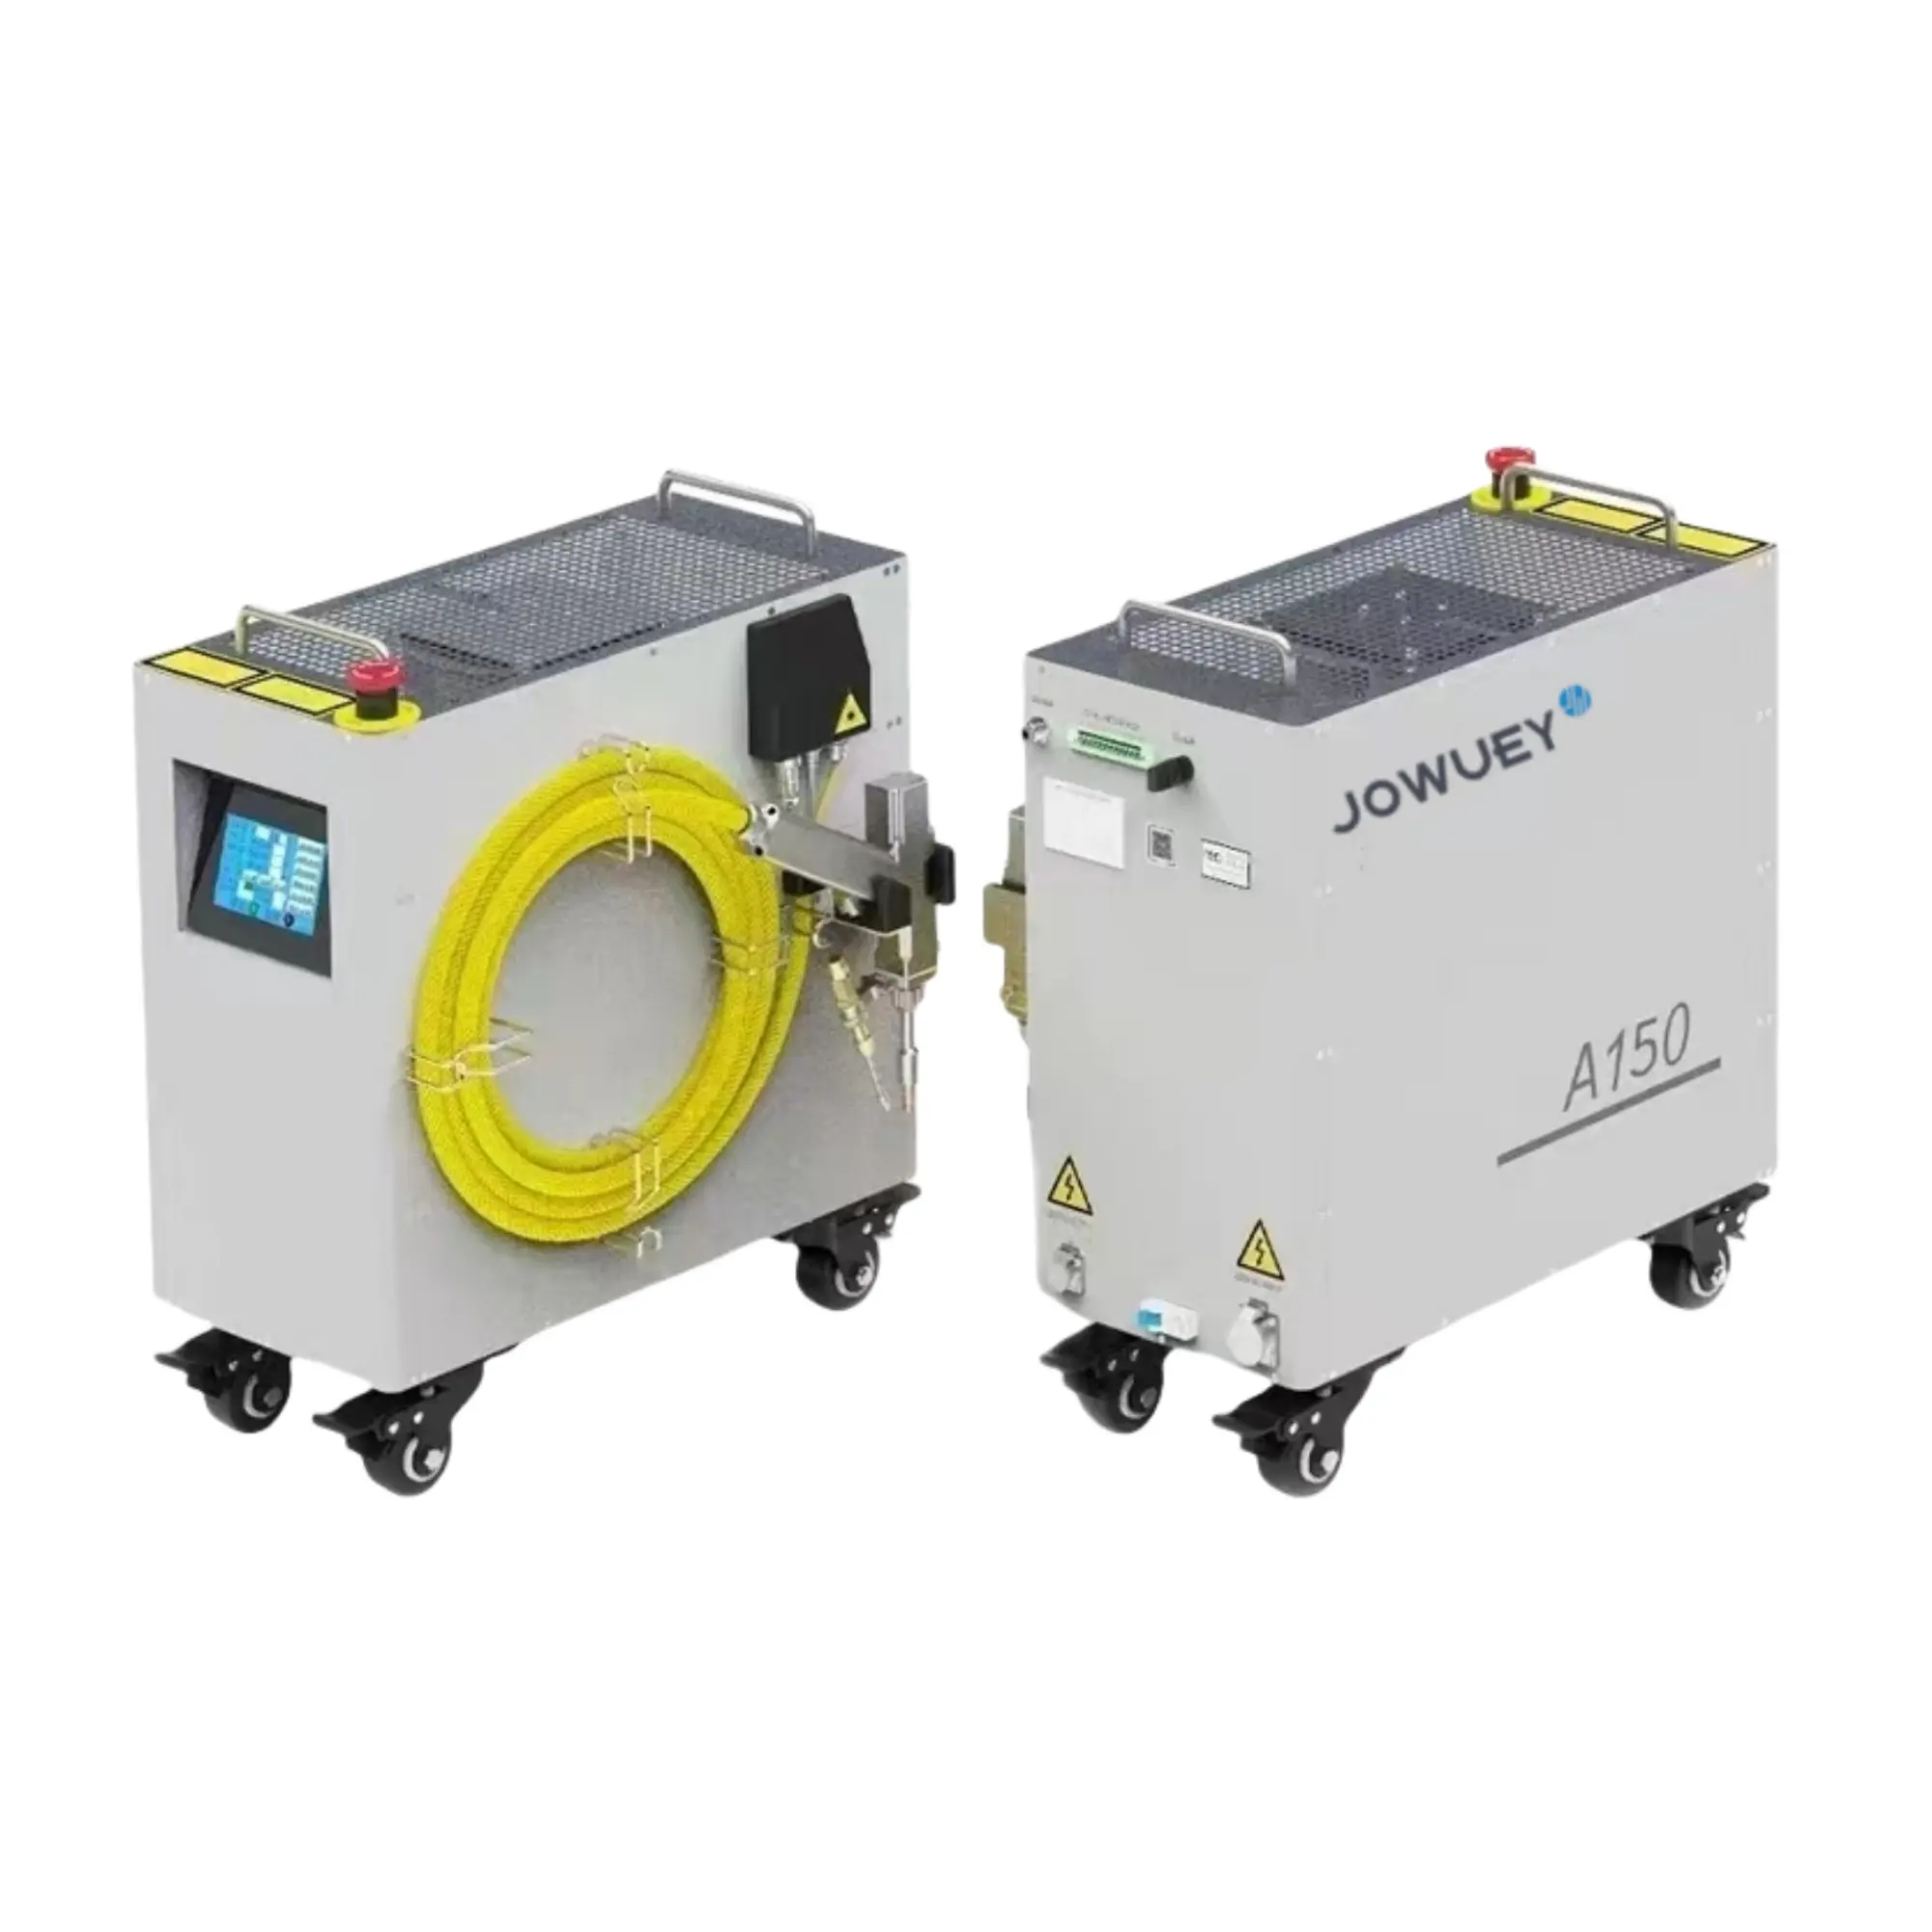 Factory Price 1200w Air Cooling Laser Pequeno Laser Welding Machine 1200w Laser Welder